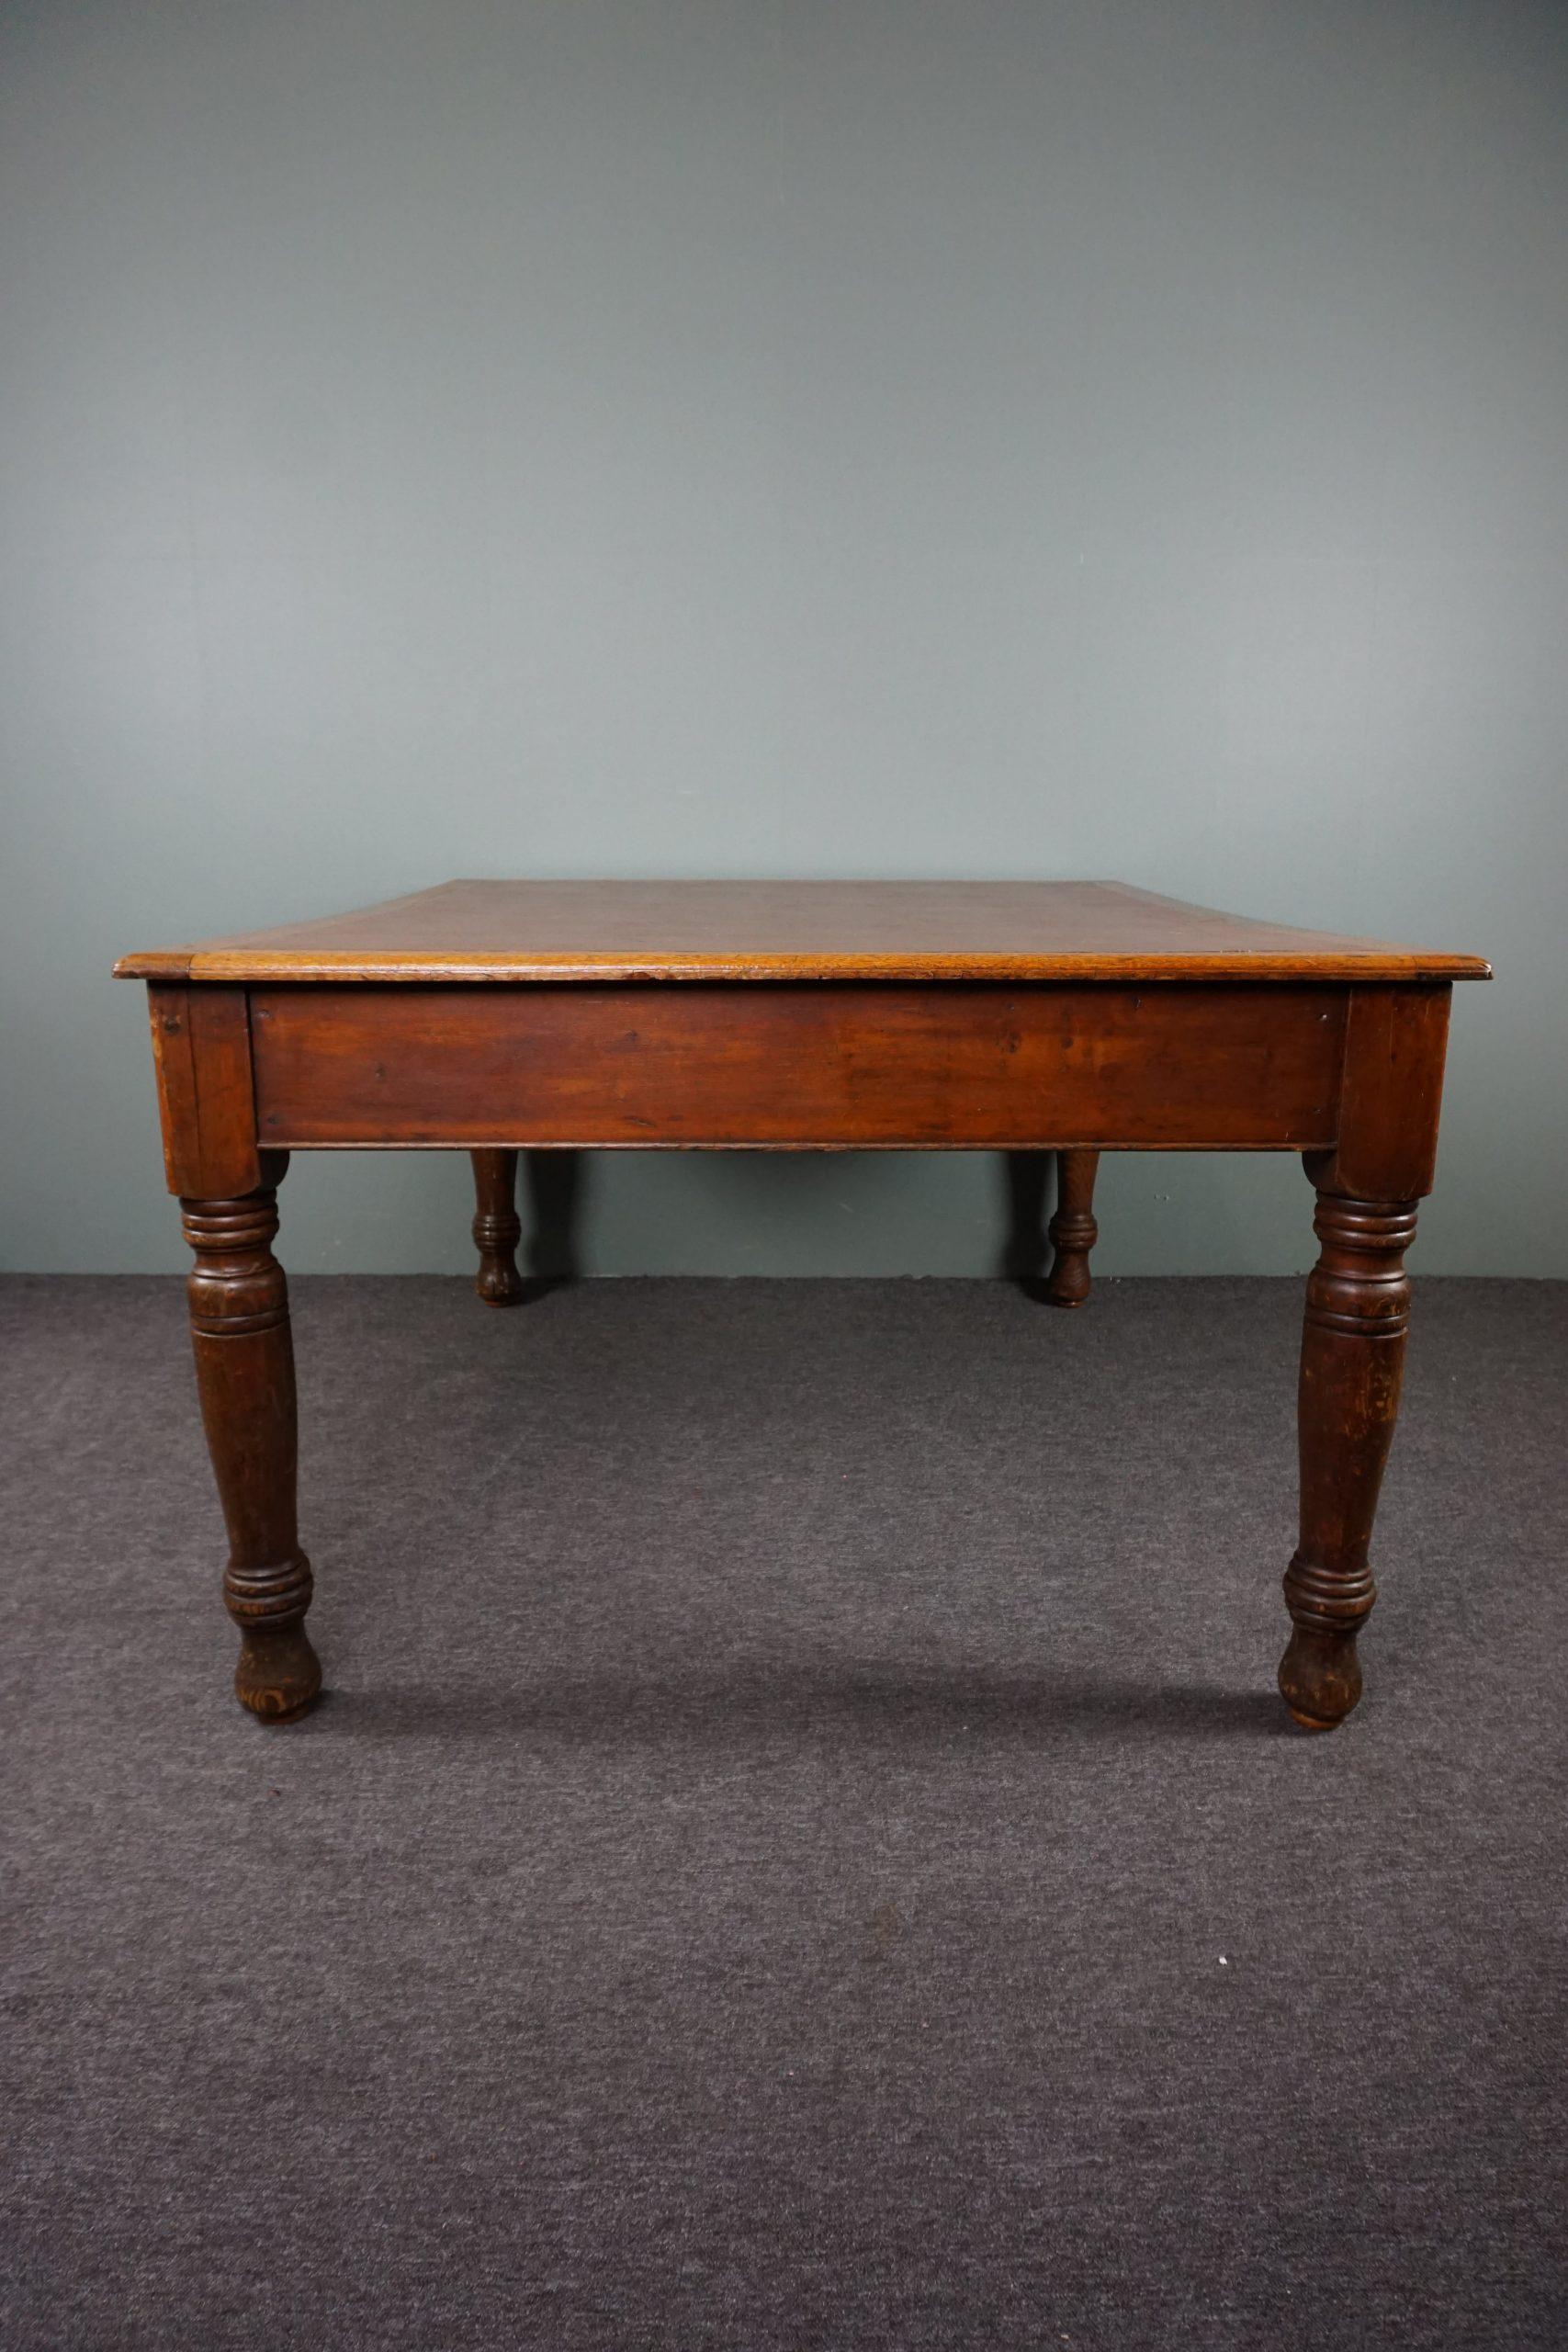 Angeboten wird dieser robuste, antike Schreibtisch mit einem schönen, lebendigen Aussehen.

Dies ist ein fantastischer und völlig originaler Schreibtisch aus dem frühen 20. Jahrhundert, geliefert von Withy Grove Stores in Manchester. Withy Grove